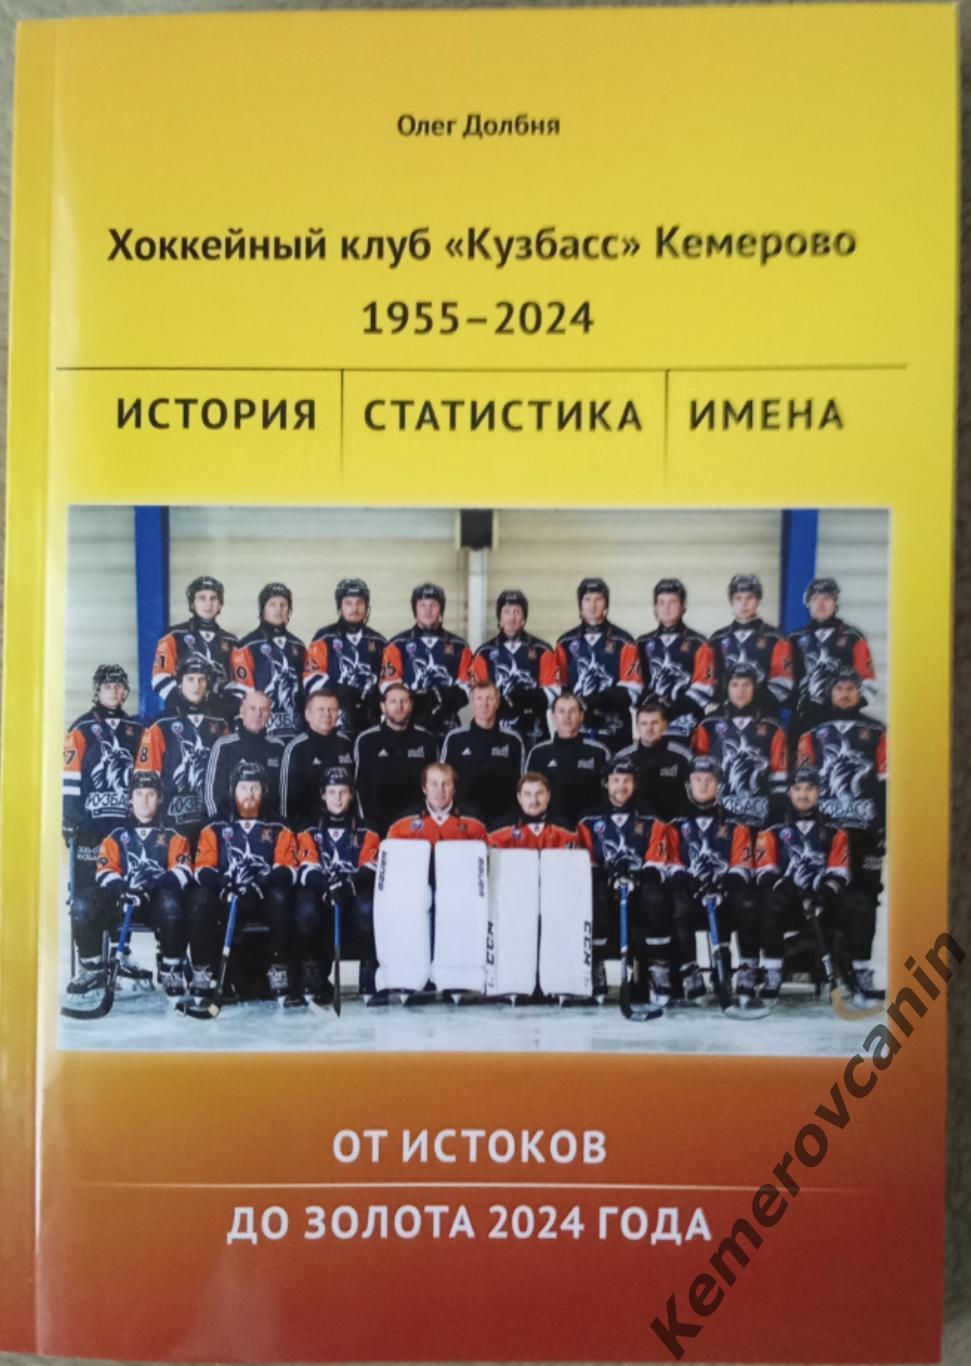 Хоккей с мячом Книга Кузбасс Кемерово 1955-2024. От истоков до золота 2024 года.